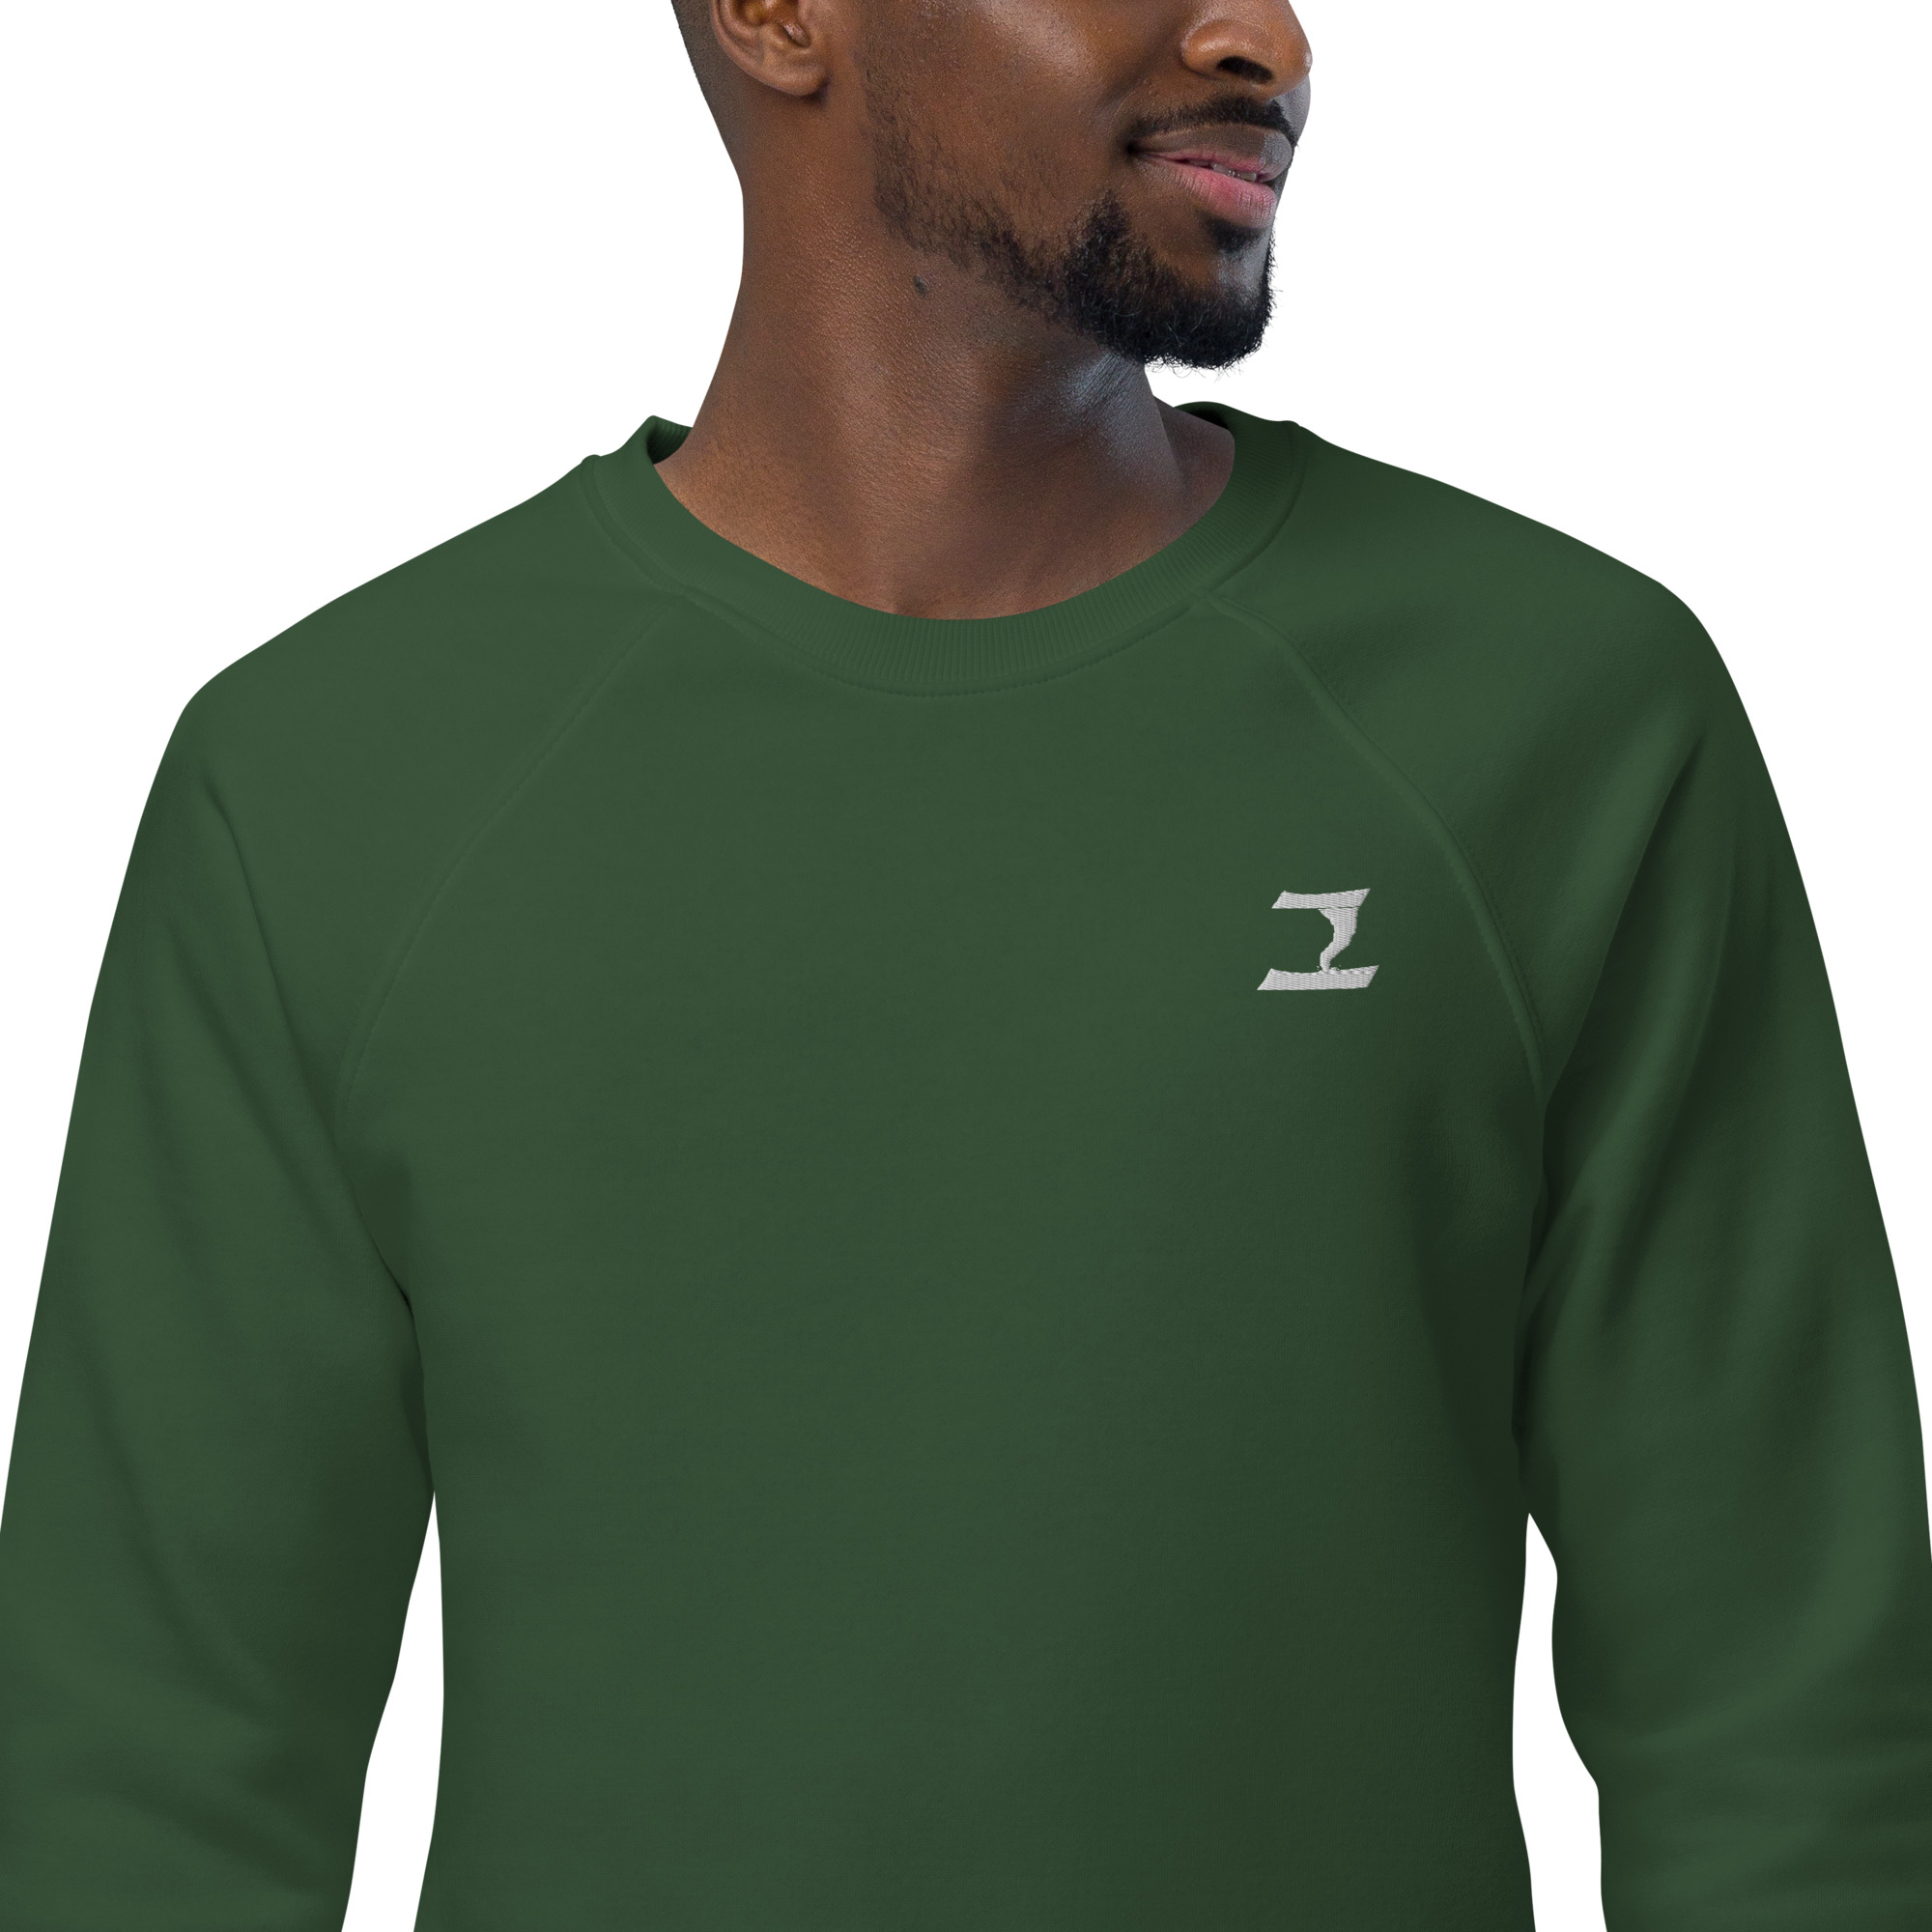 unisex-organic-raglan-sweatshirt-bottle-green-zoomed-in-6334e2624c09a.jpg